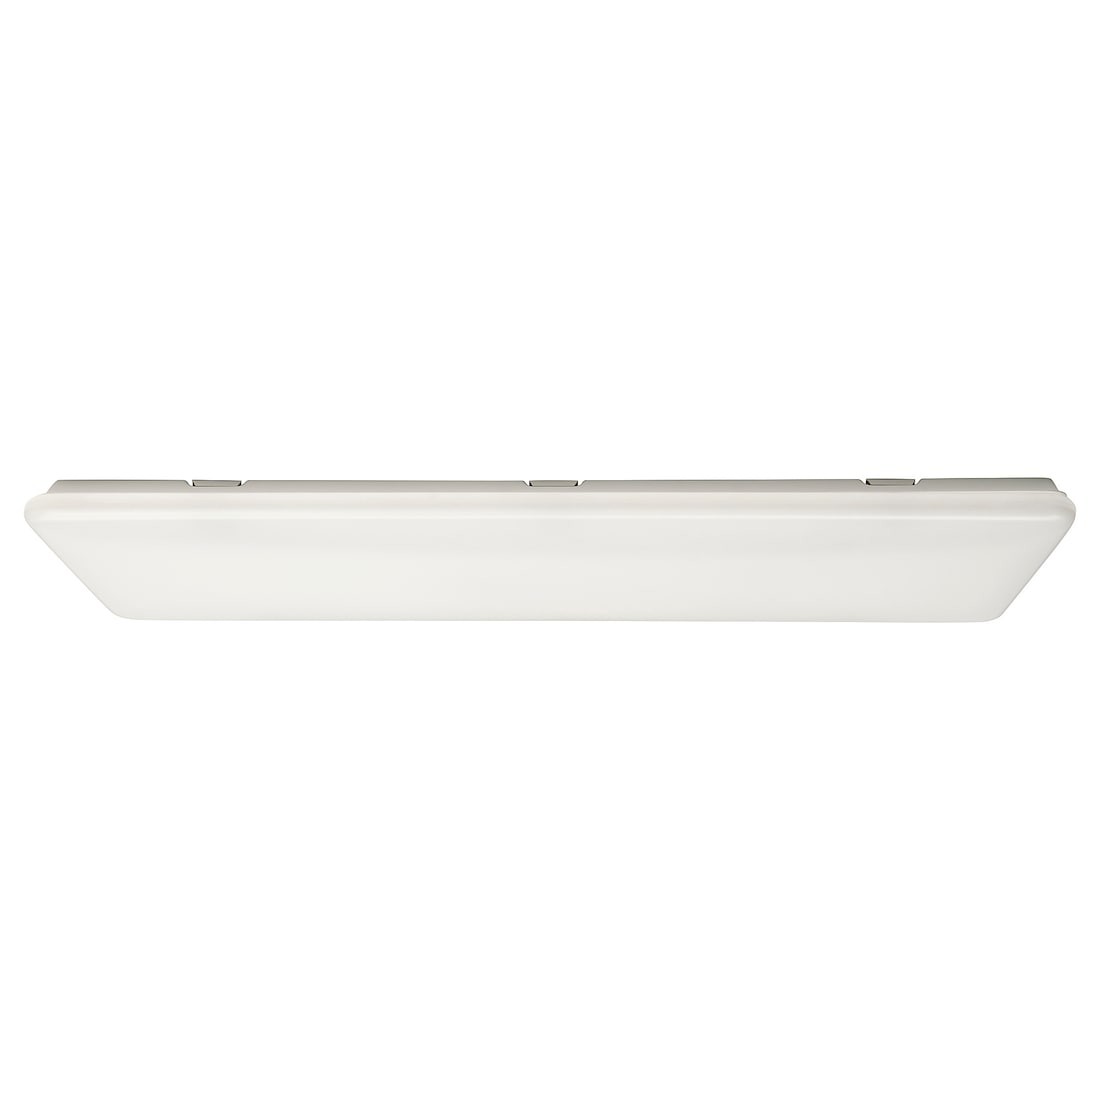 IKEA JETSTRÖM Потолочная светодиодная LED панель, интеллектуальная регулировка яркости / белый спектр, 100x40 см 30536062 305.360.62